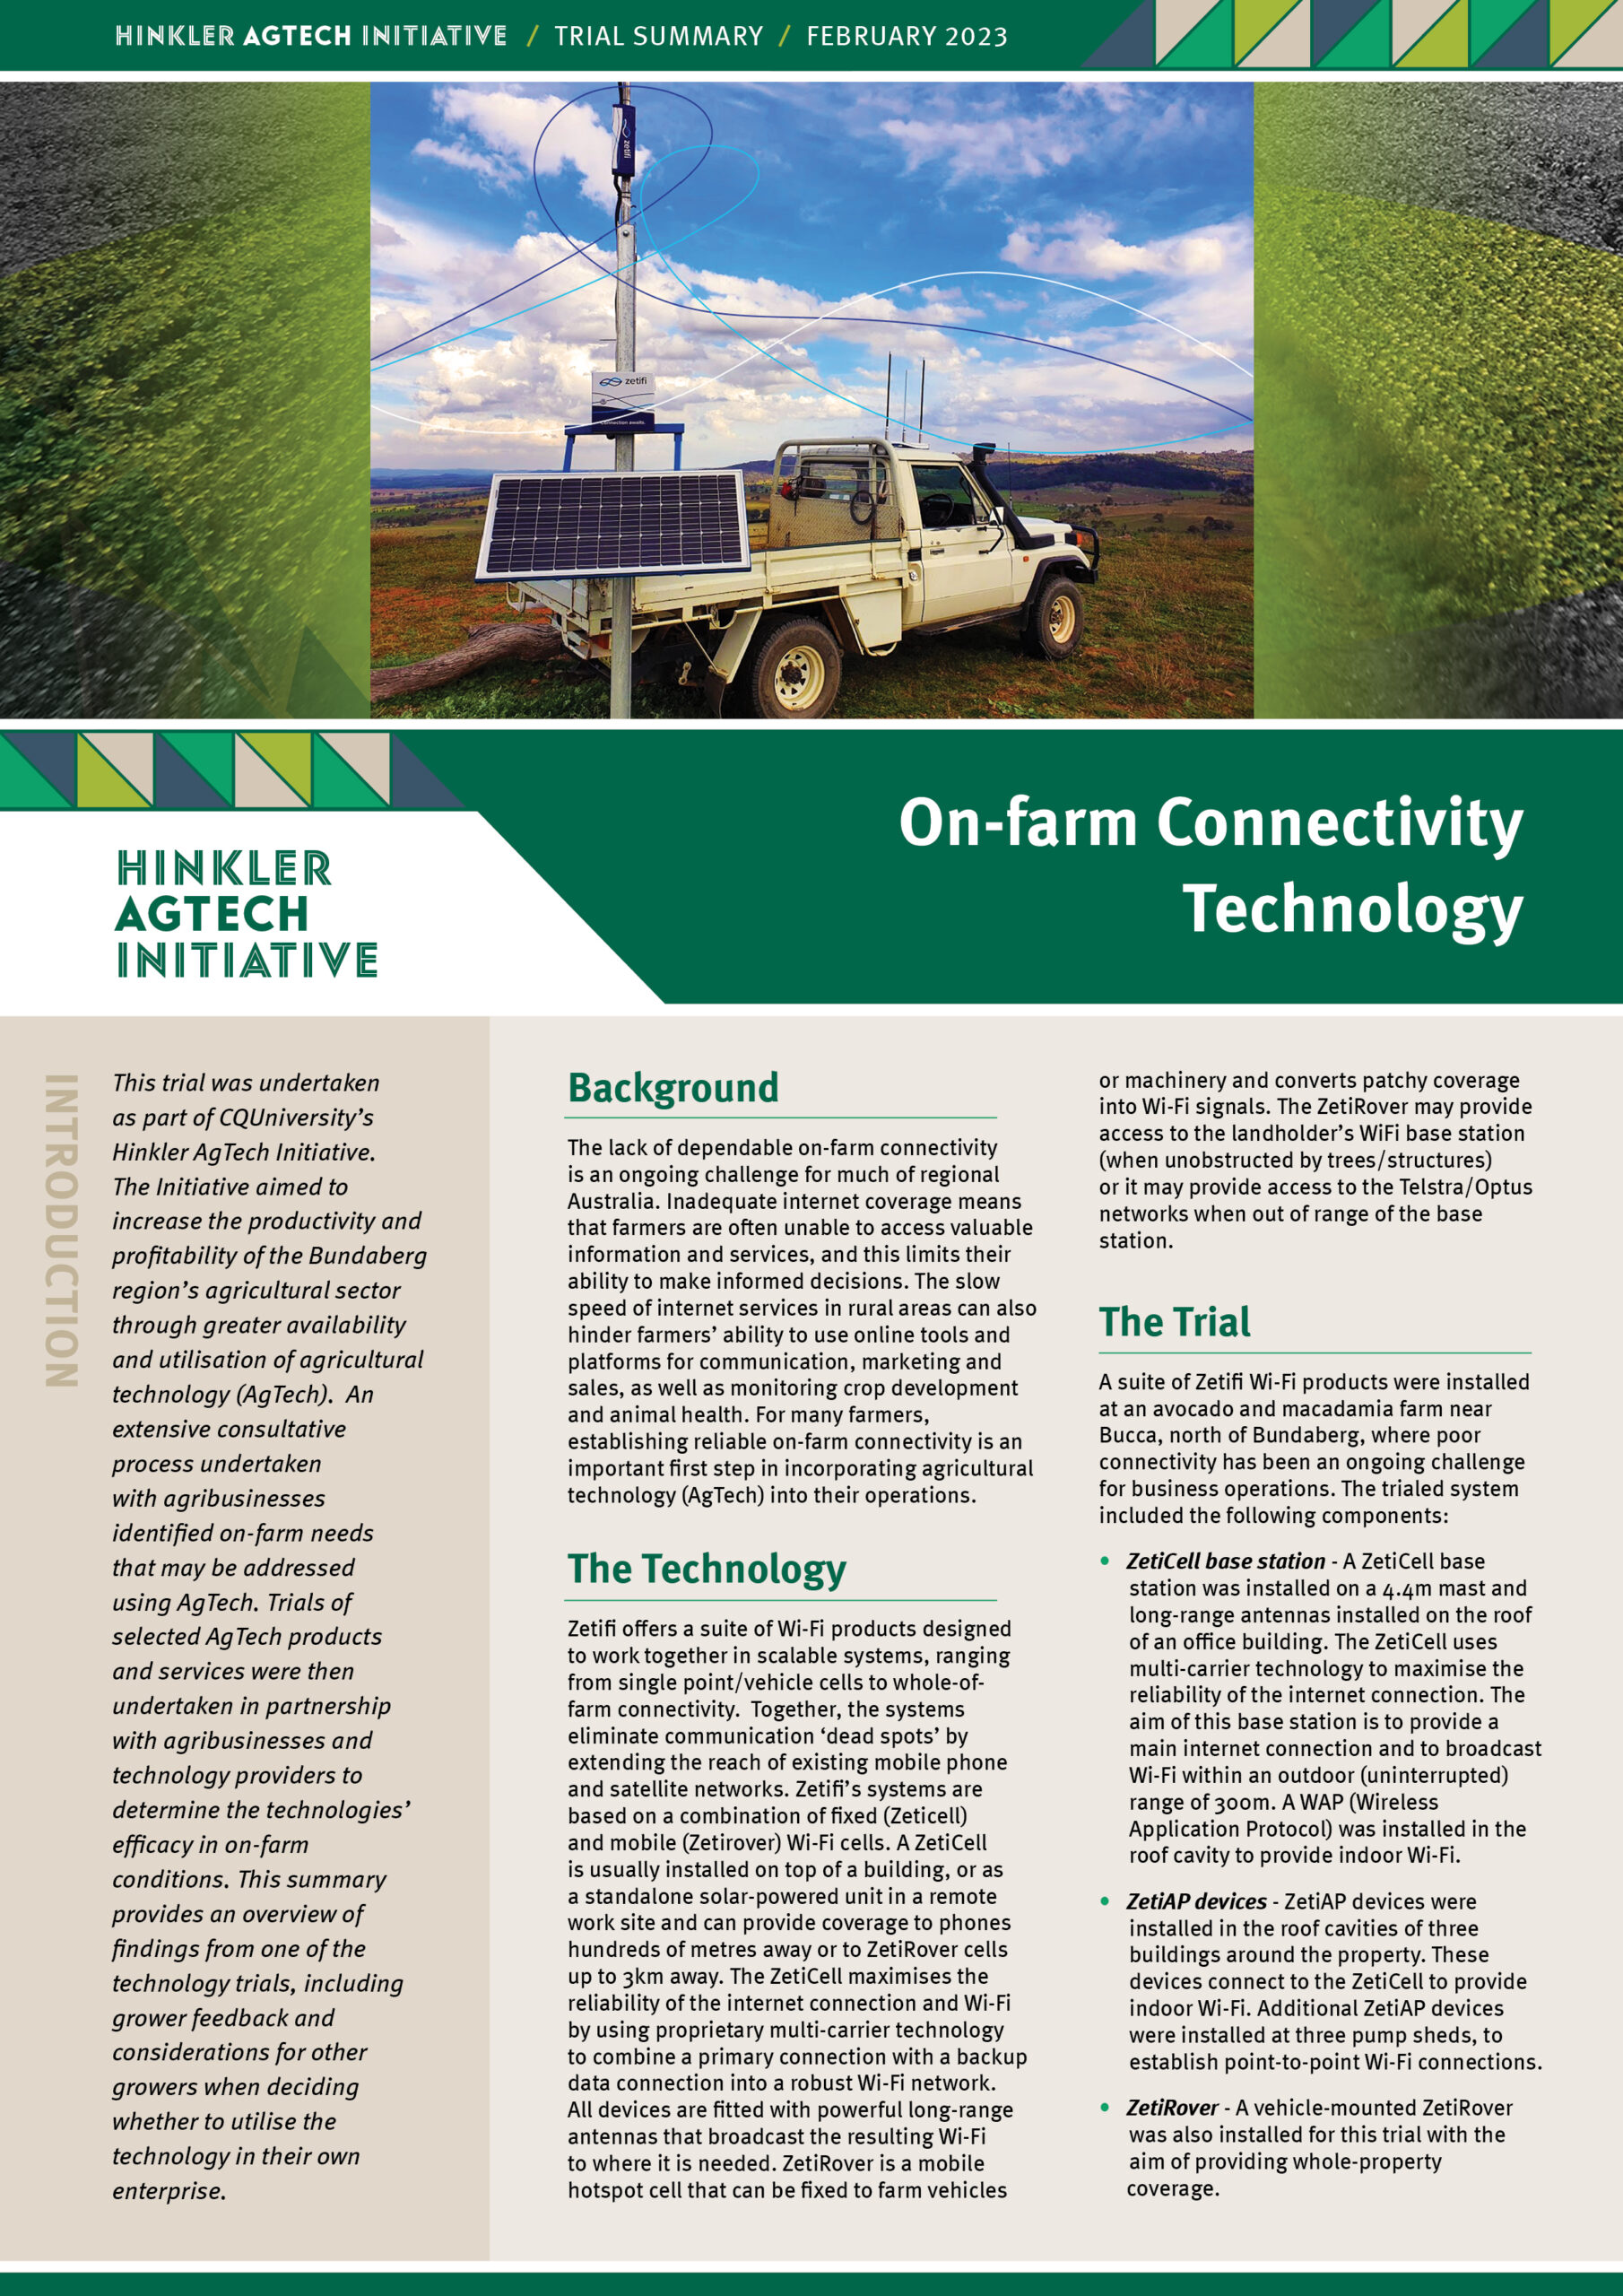 On-Farm Connectivity Technology